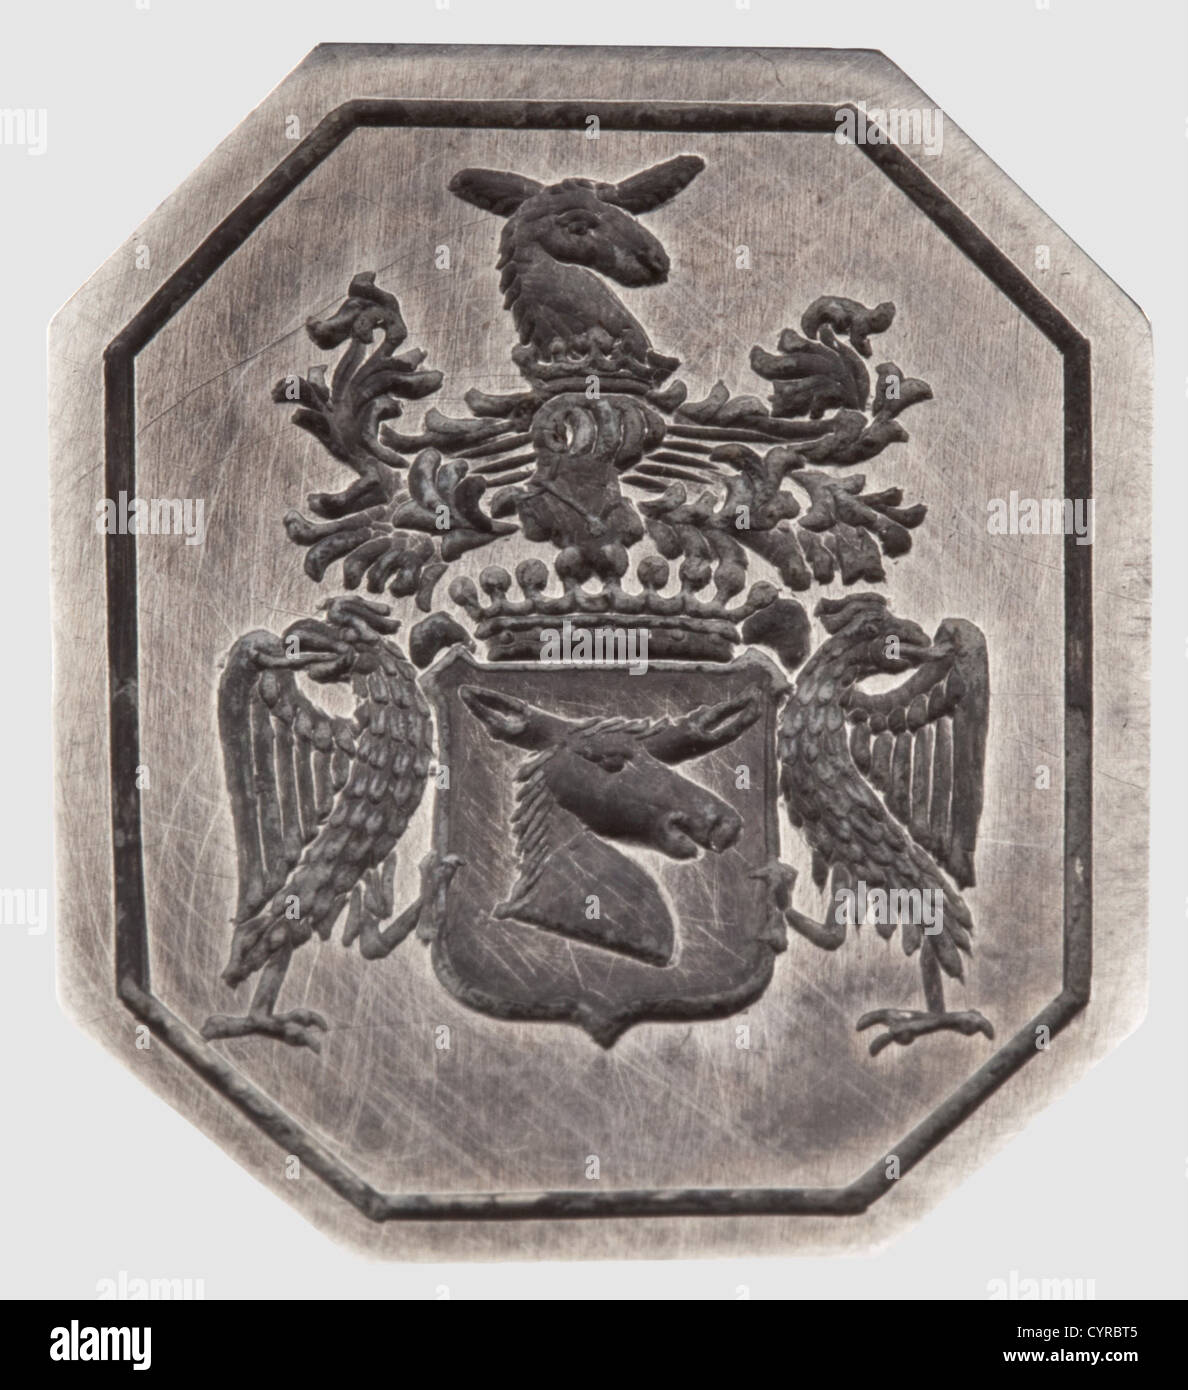 Ferdinand Count Zeppelin, un sceau d'argent personnel dans son étui argent  avec des marques de caractère illisibles à la française. Les deux côtés  affichent des dragons, des torches et des abeilles qui